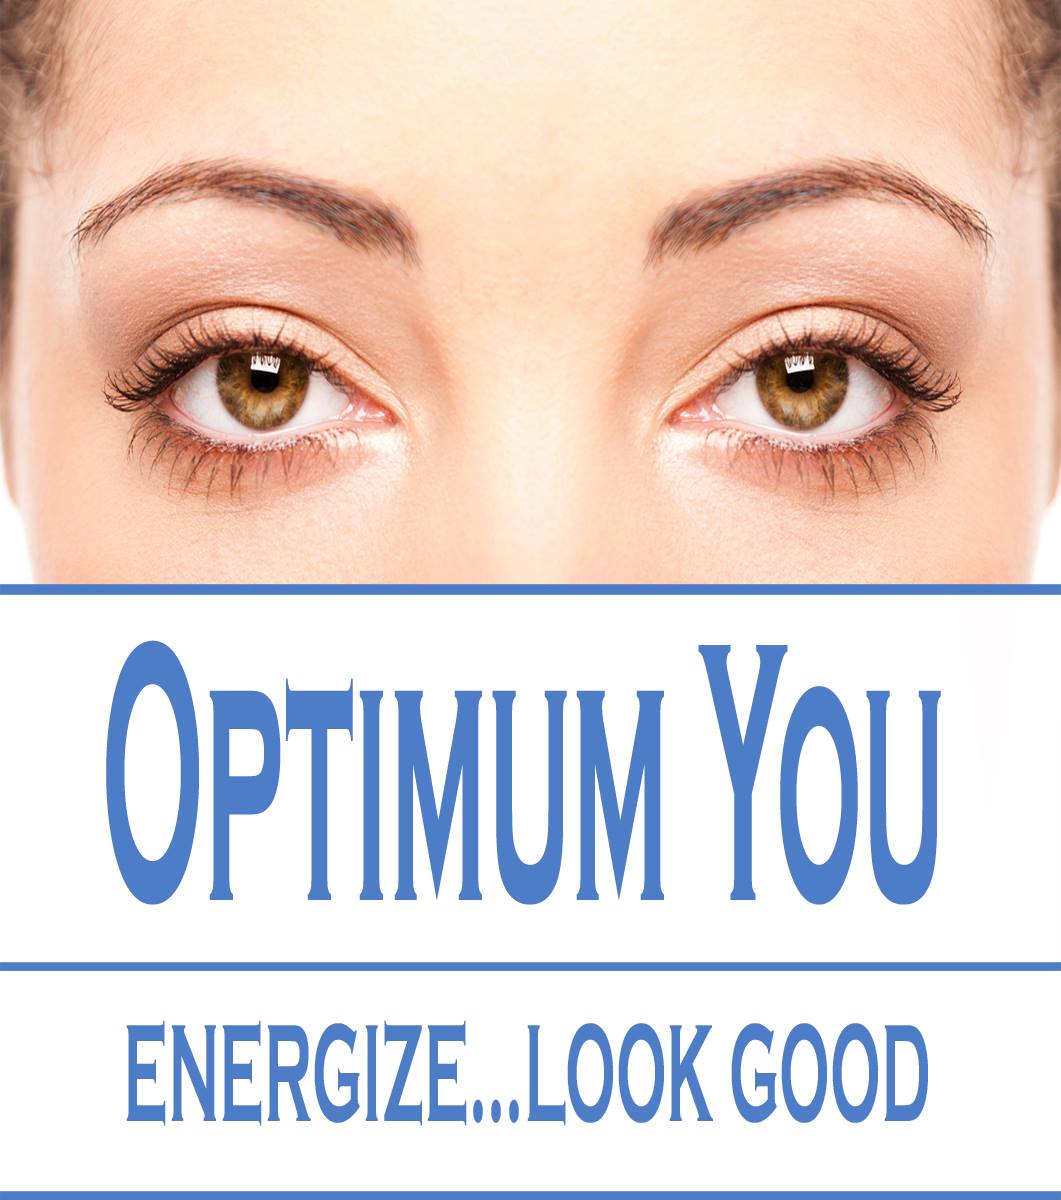 Optimum You, Energize...Look Good